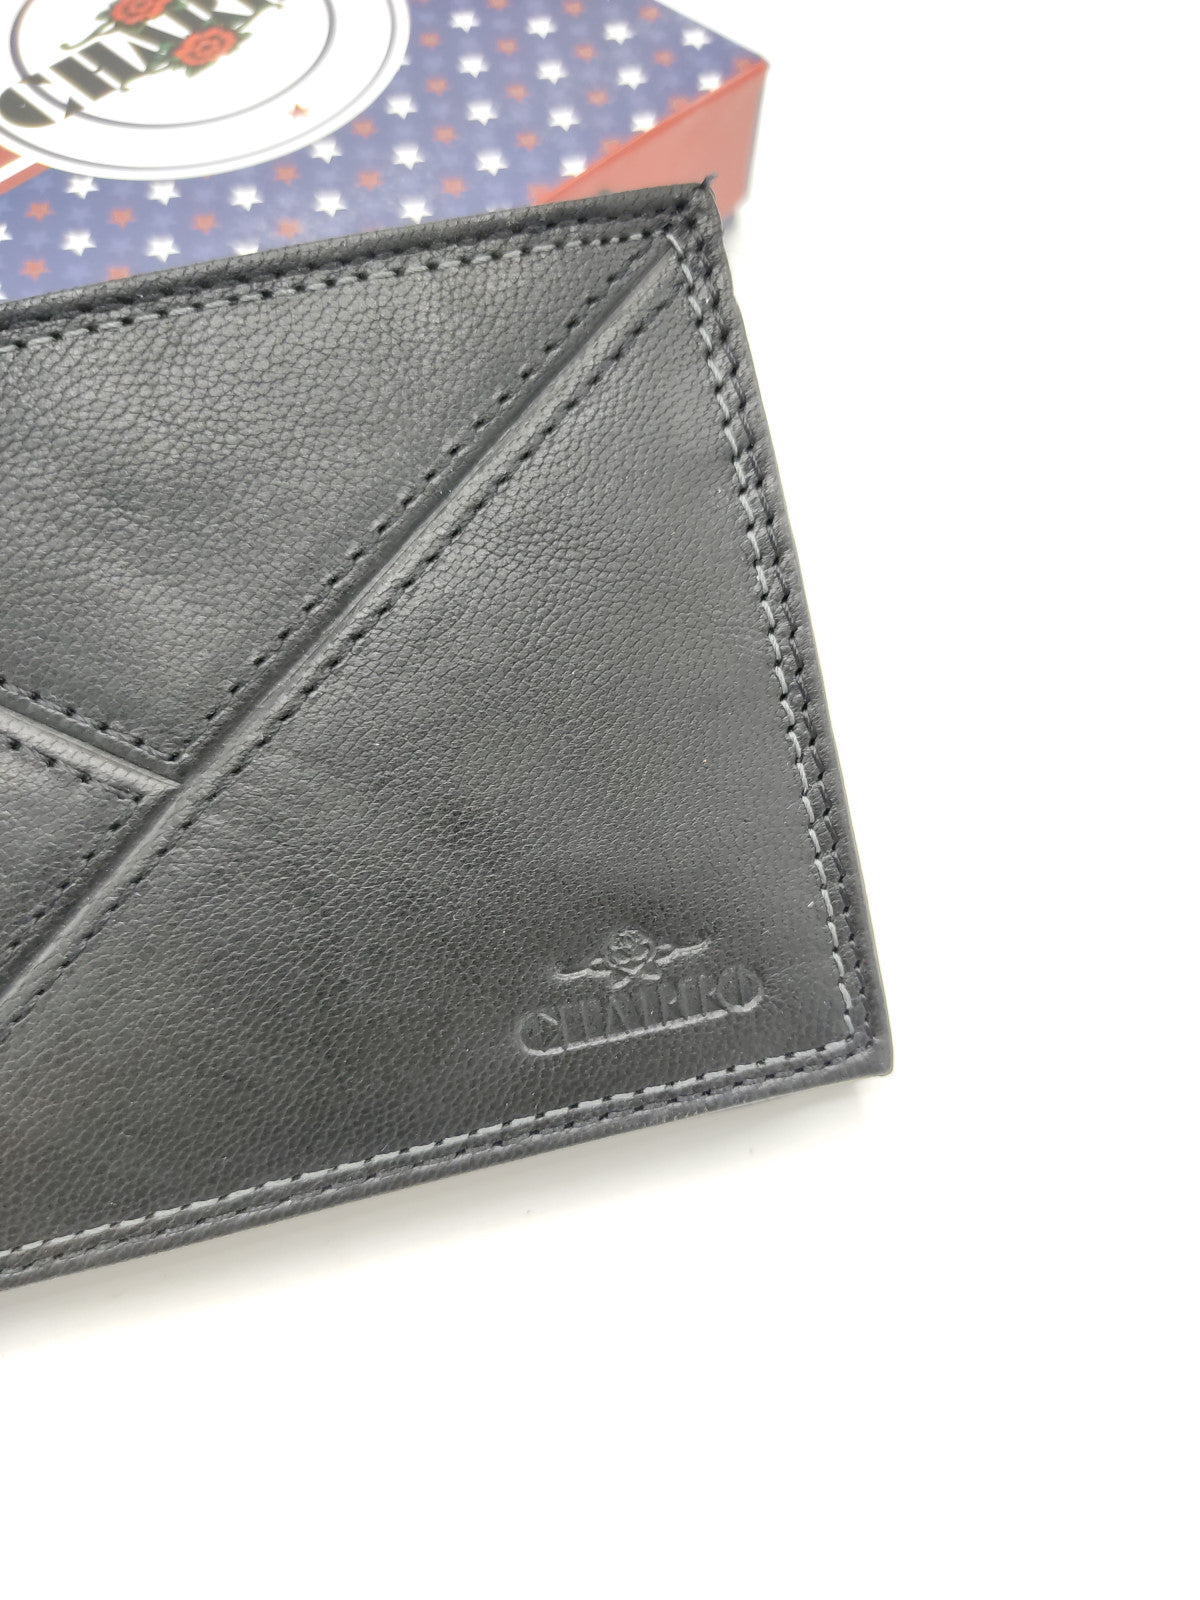 Genuine leather wallet for men, Brand Charro, art. IMER1123.422